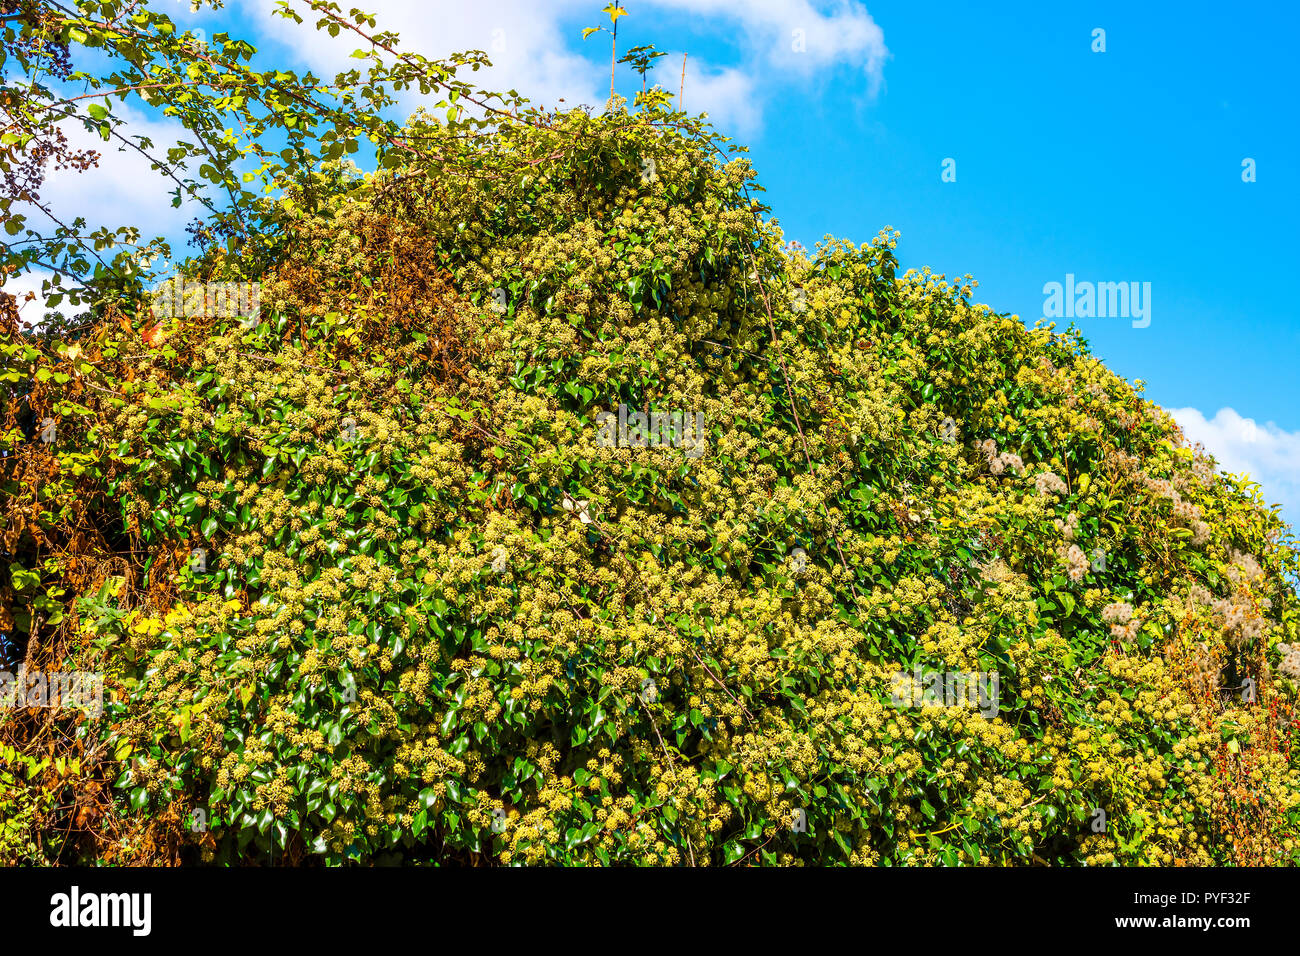 Blühende gemeinsame Efeu (Hedera helix) Pflanze - Frankreich. Stockfoto